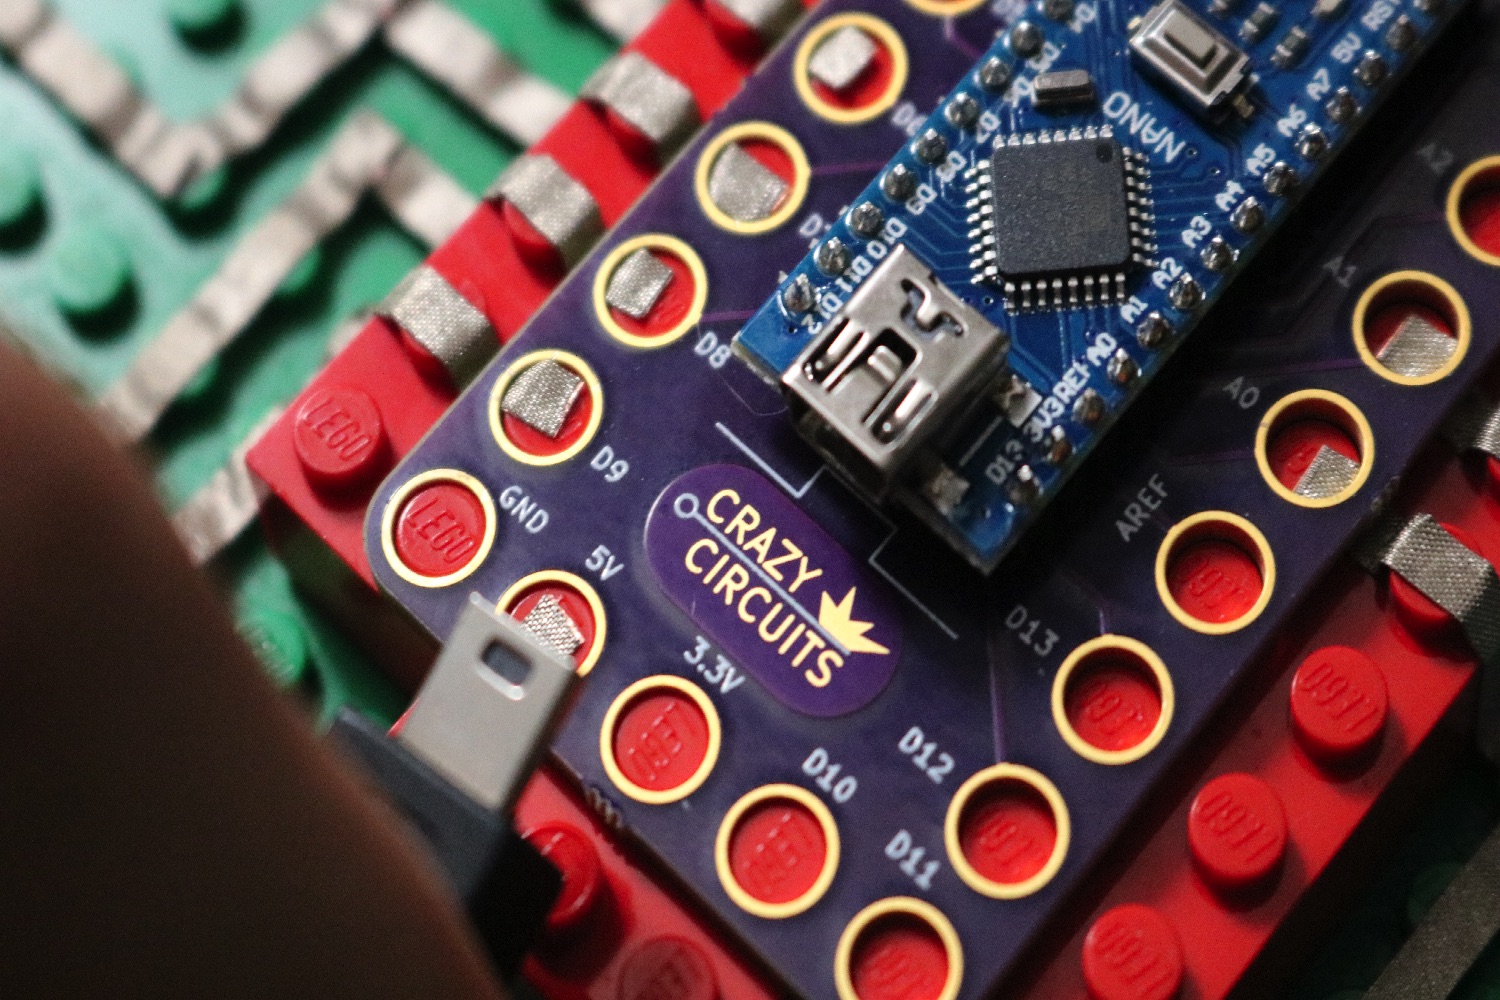 kickstarter crazy circuits lego set arduino